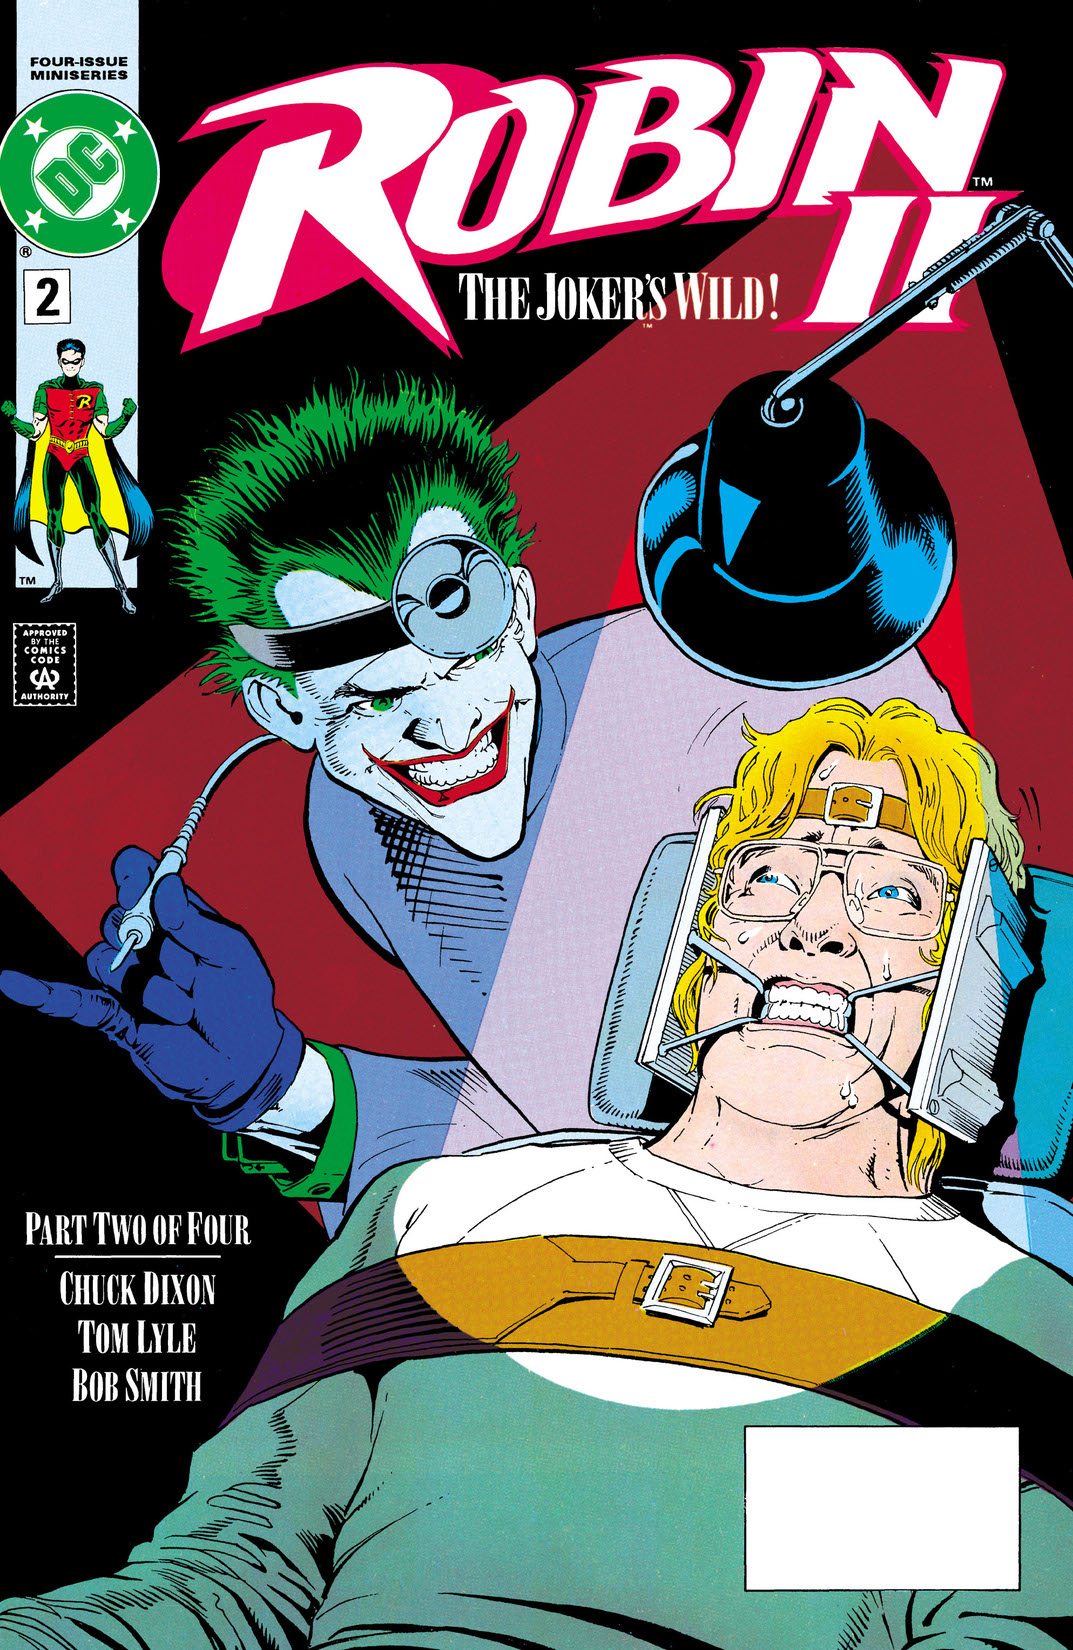 Robin II: Joker's Wild #2 preview images